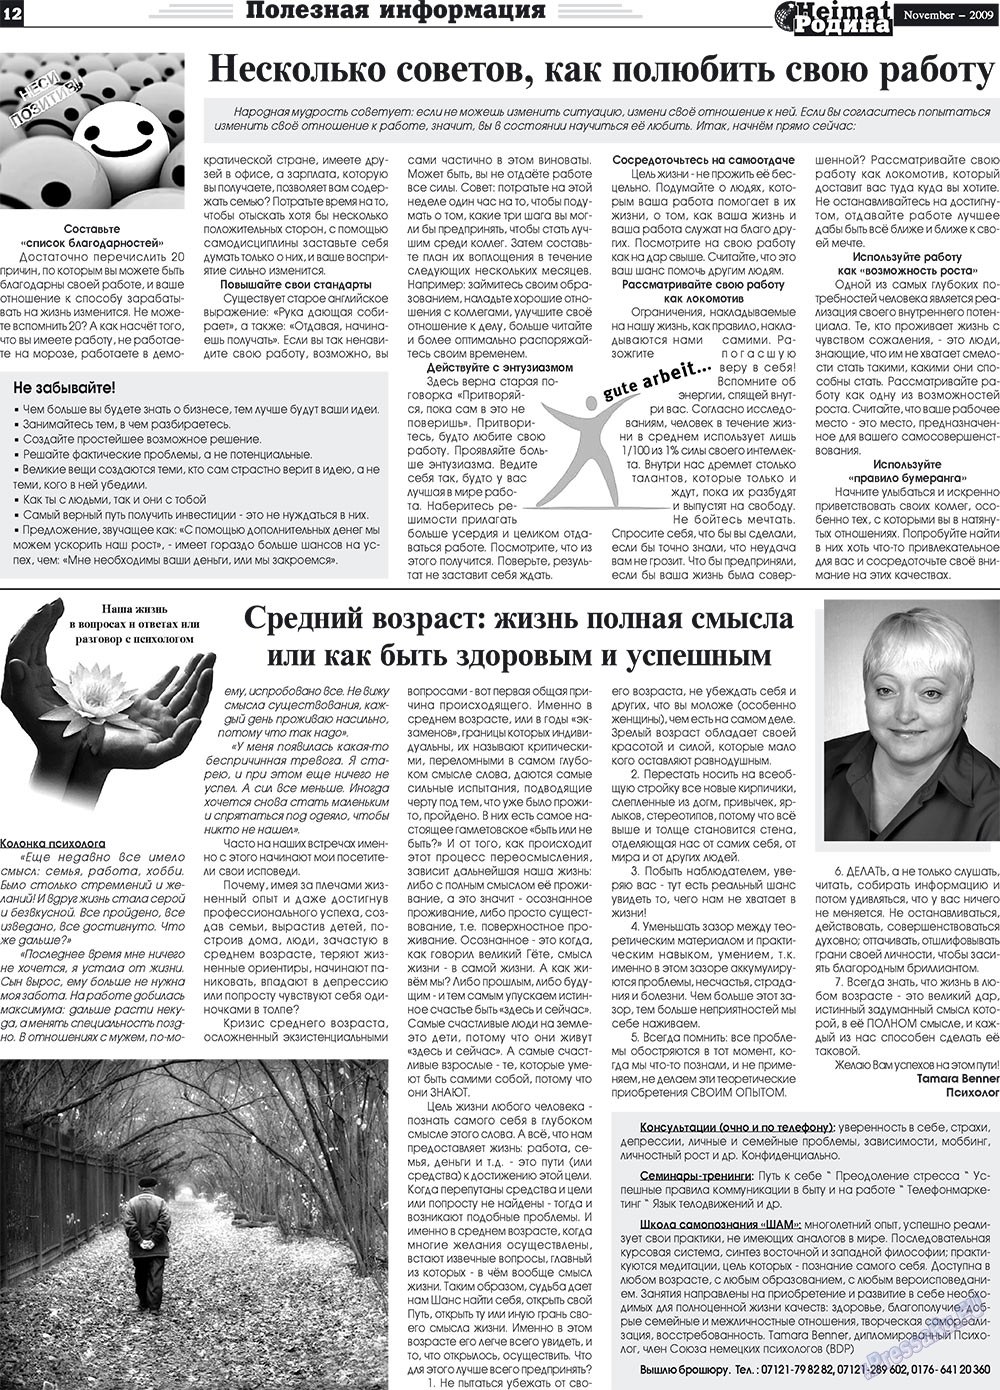 Heimat-Родина (газета). 2009 год, номер 11, стр. 12